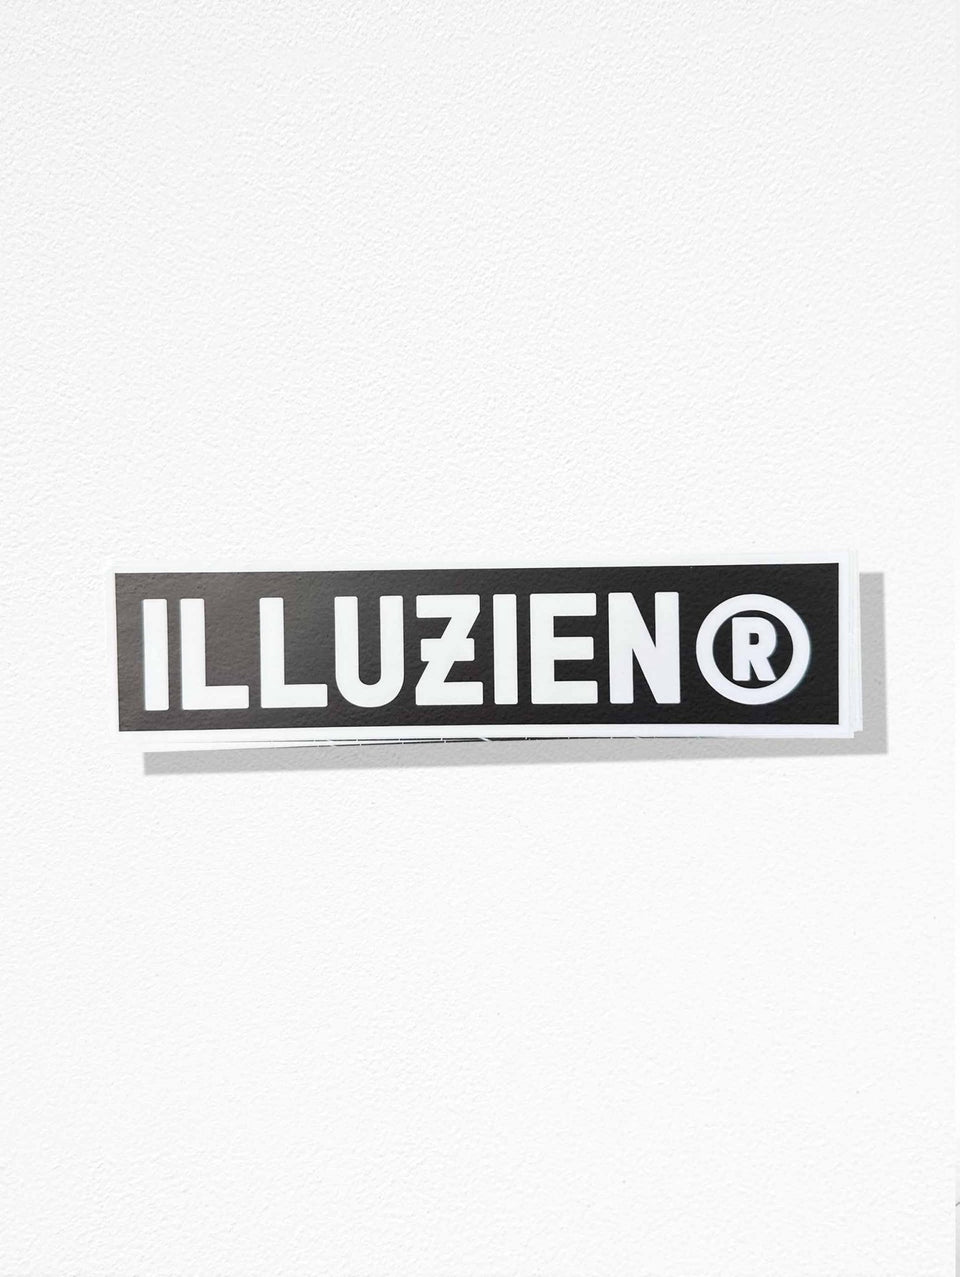 9" ILLUZIEN® Sticker - Illuzien